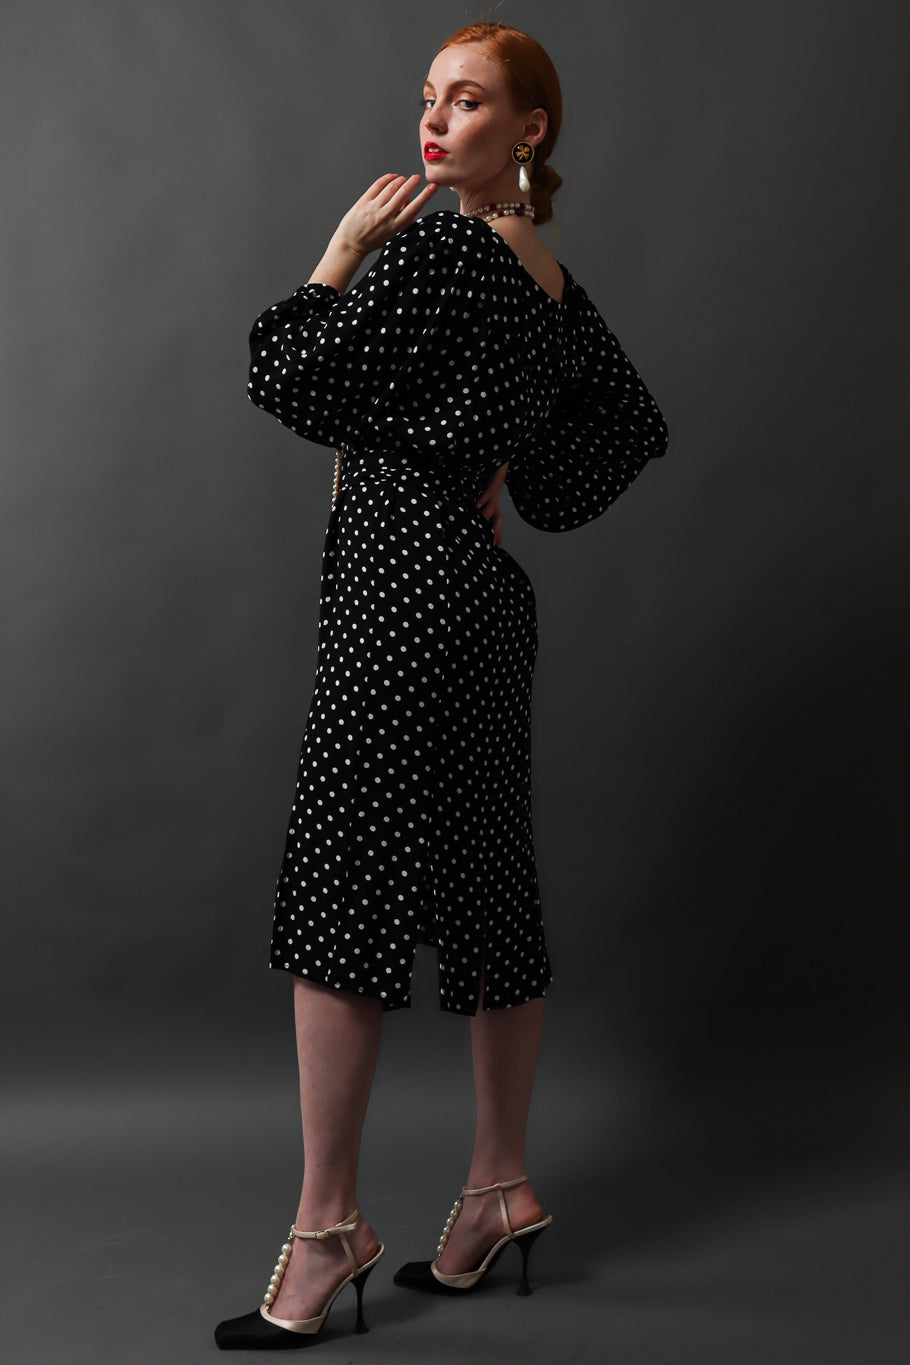 Emily O'Dette in Yves Saint Laurent Polka Dot Dress @ Recess LA